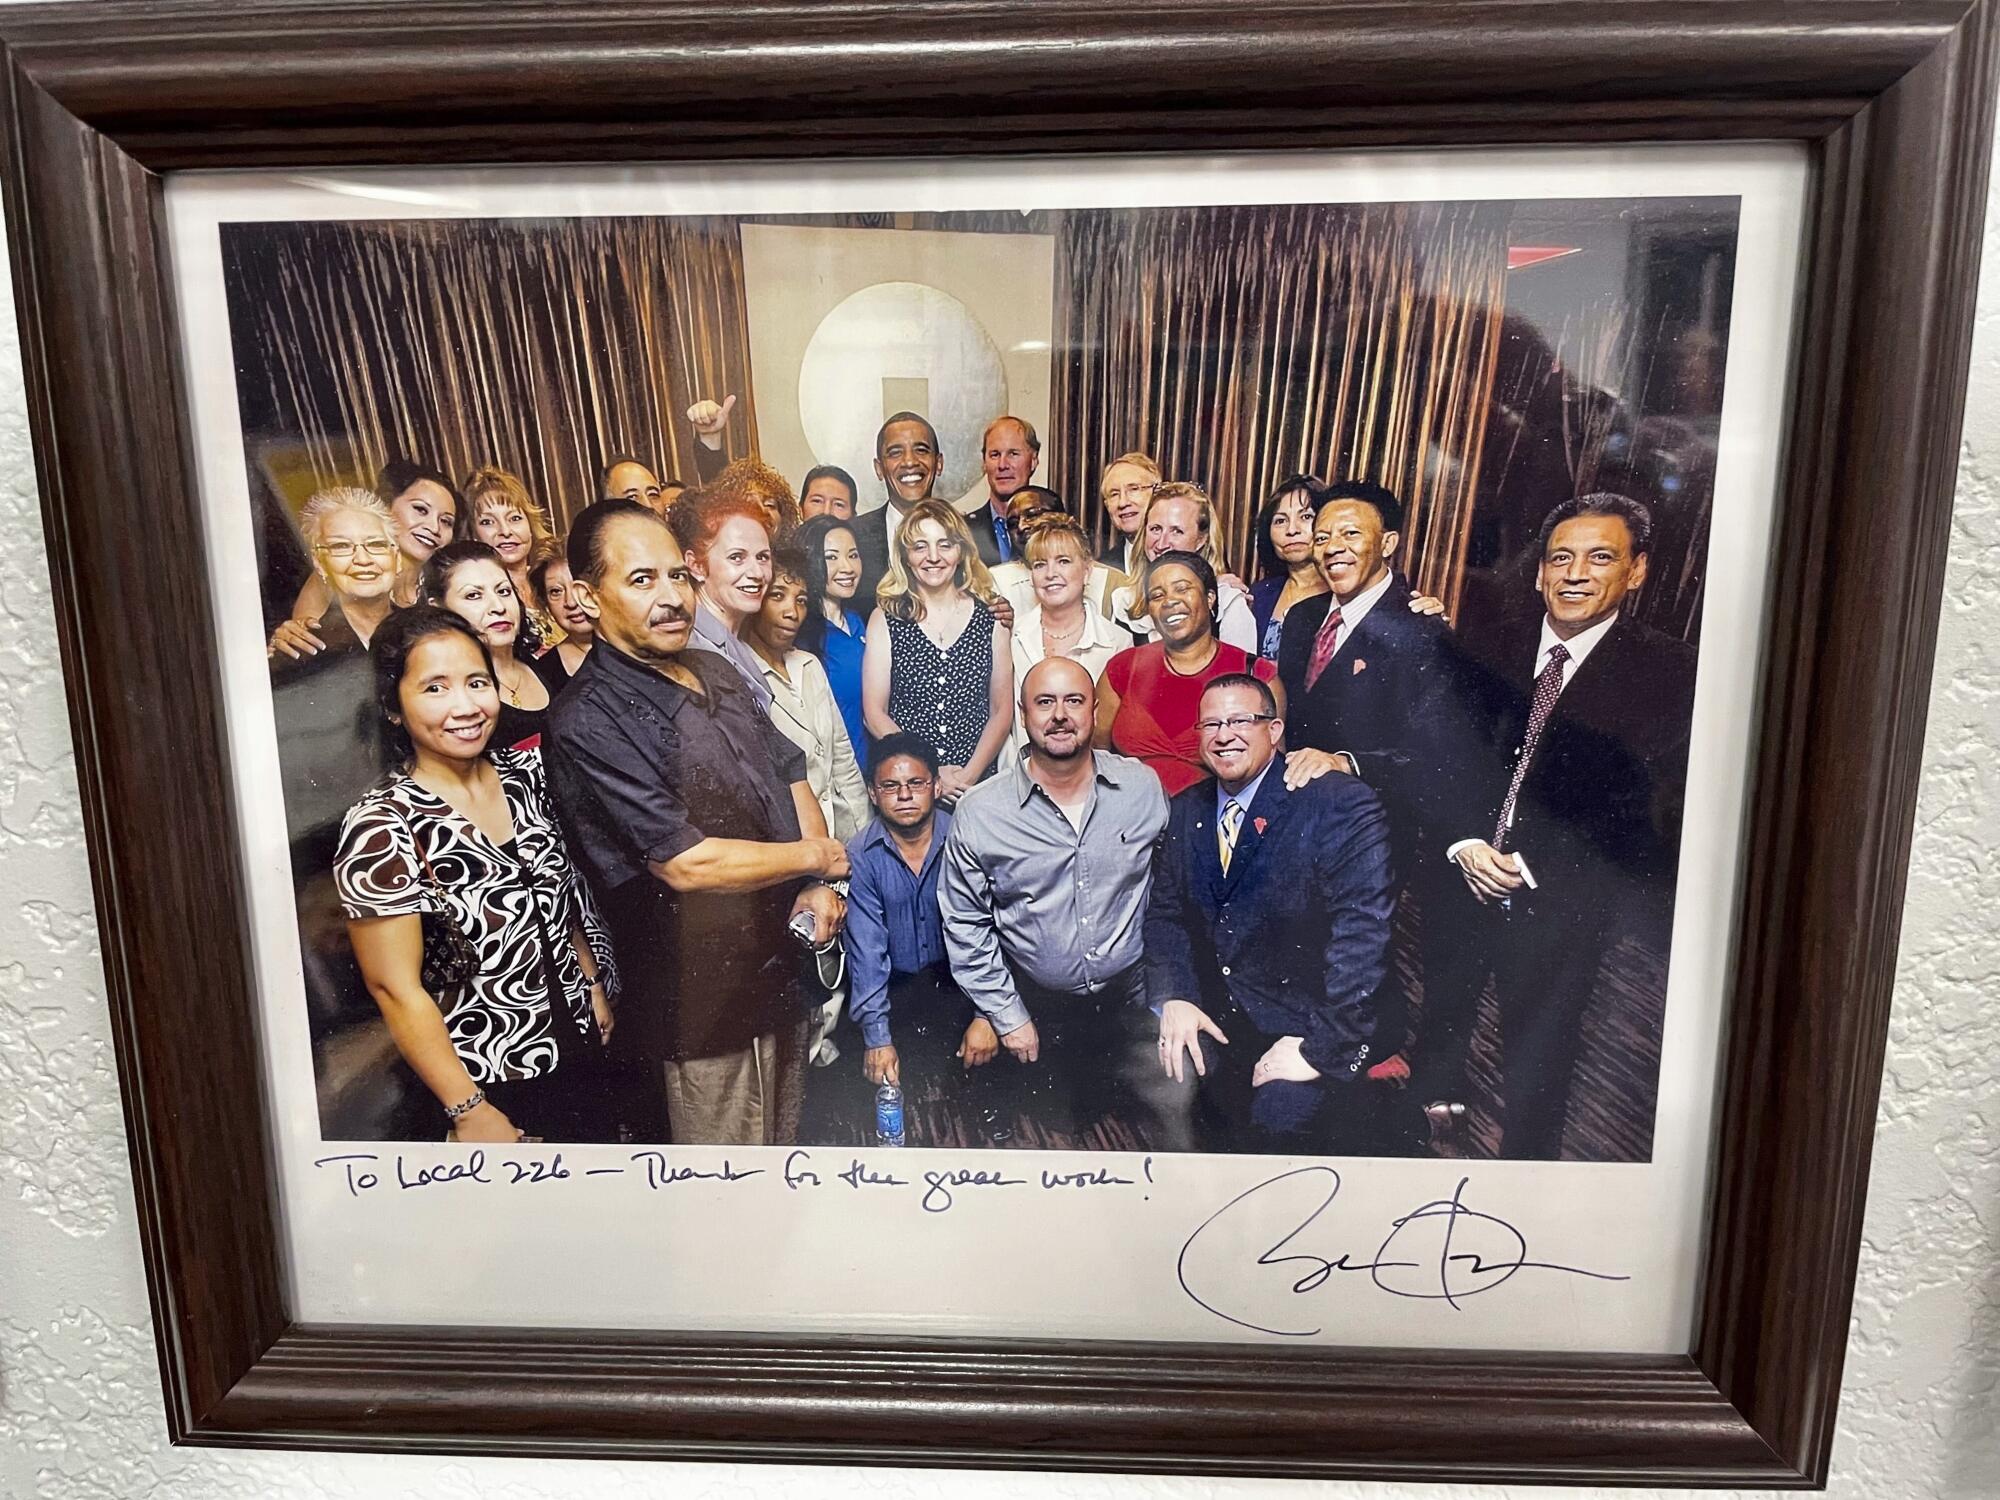 Başkan Obama'nın ve 20-30 kişinin imzasını taşıyan ve şu mesajla birlikte çekilmiş bir fotoğraf: "Yerel 226'ya — harika çalışmanız için teşekkürler!"